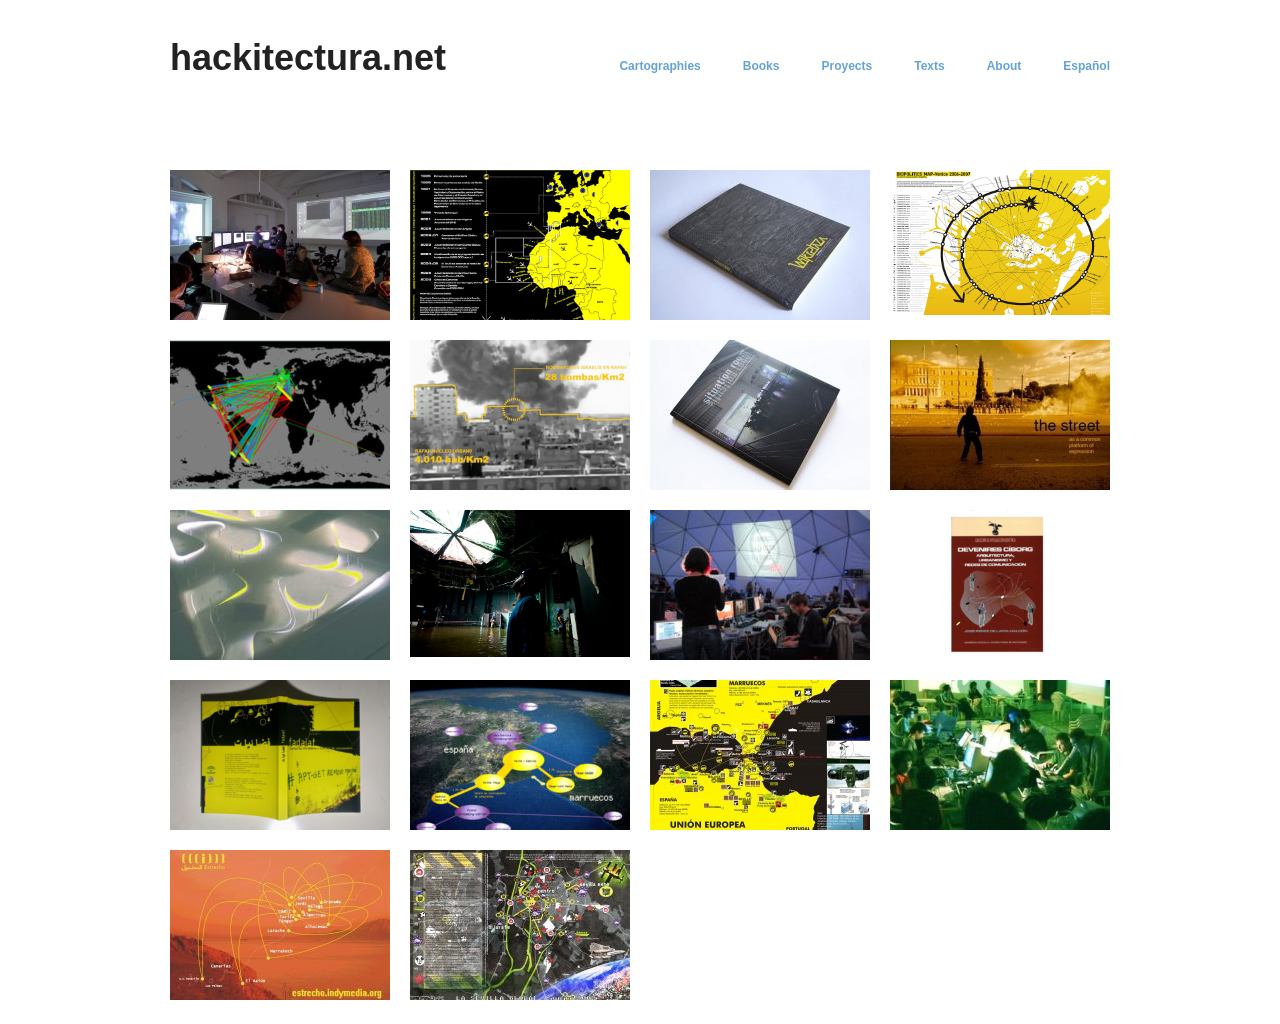 hackitectura.net